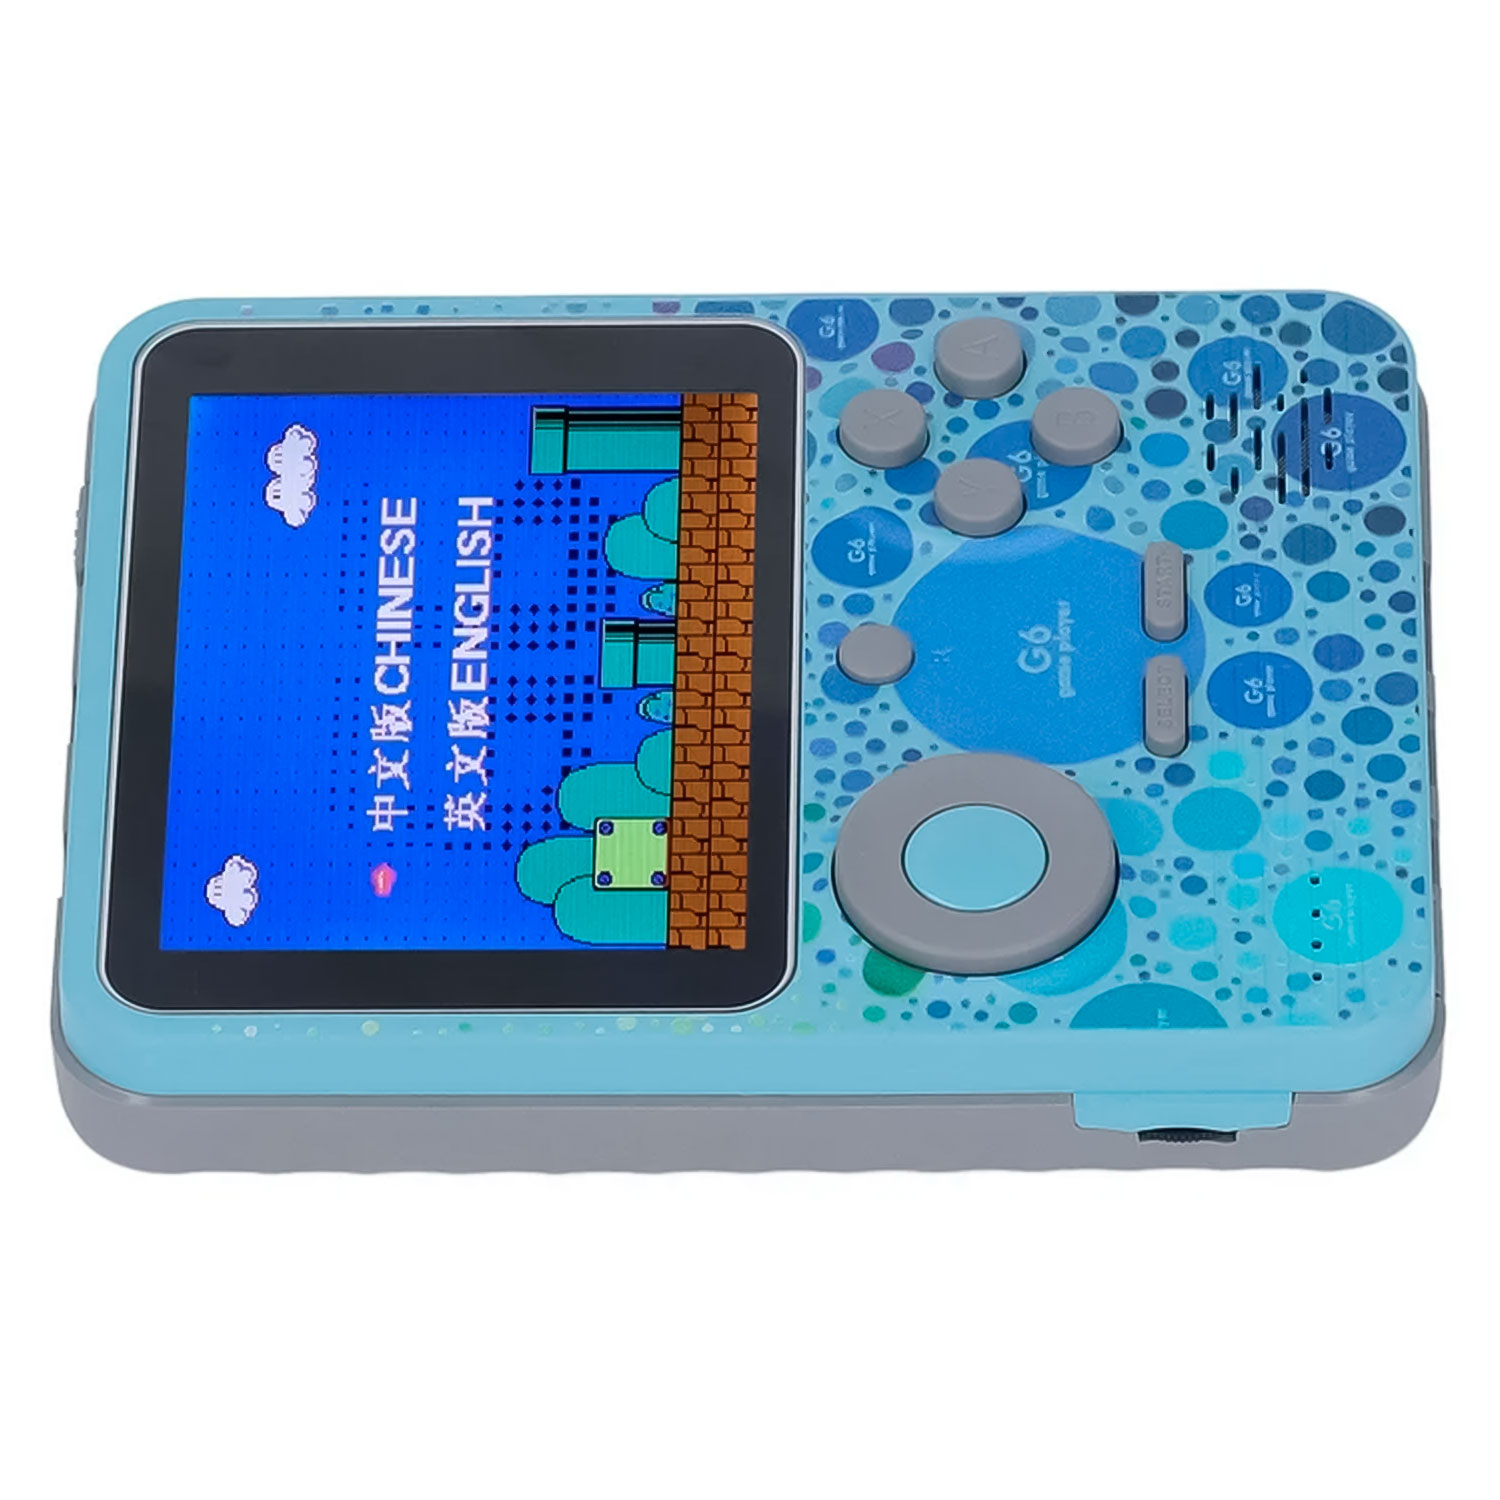 Console Portátil Game Box G6 Power Bank 666 Jogos - Azul